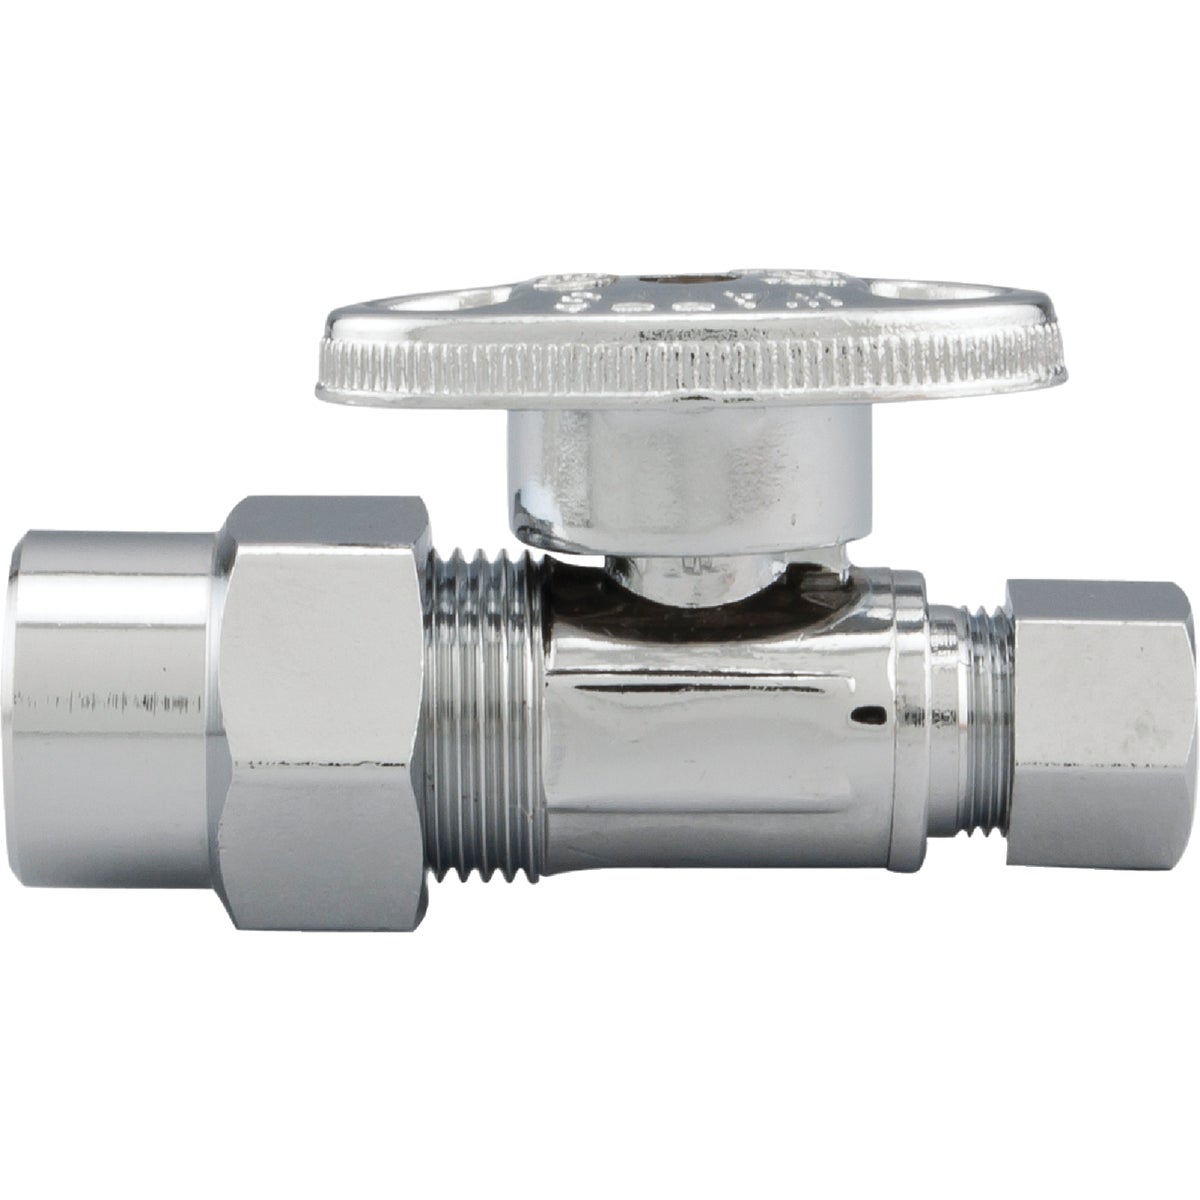 Item 400751, 1/4-turn valve controls water flow to household plumbing fixtures.